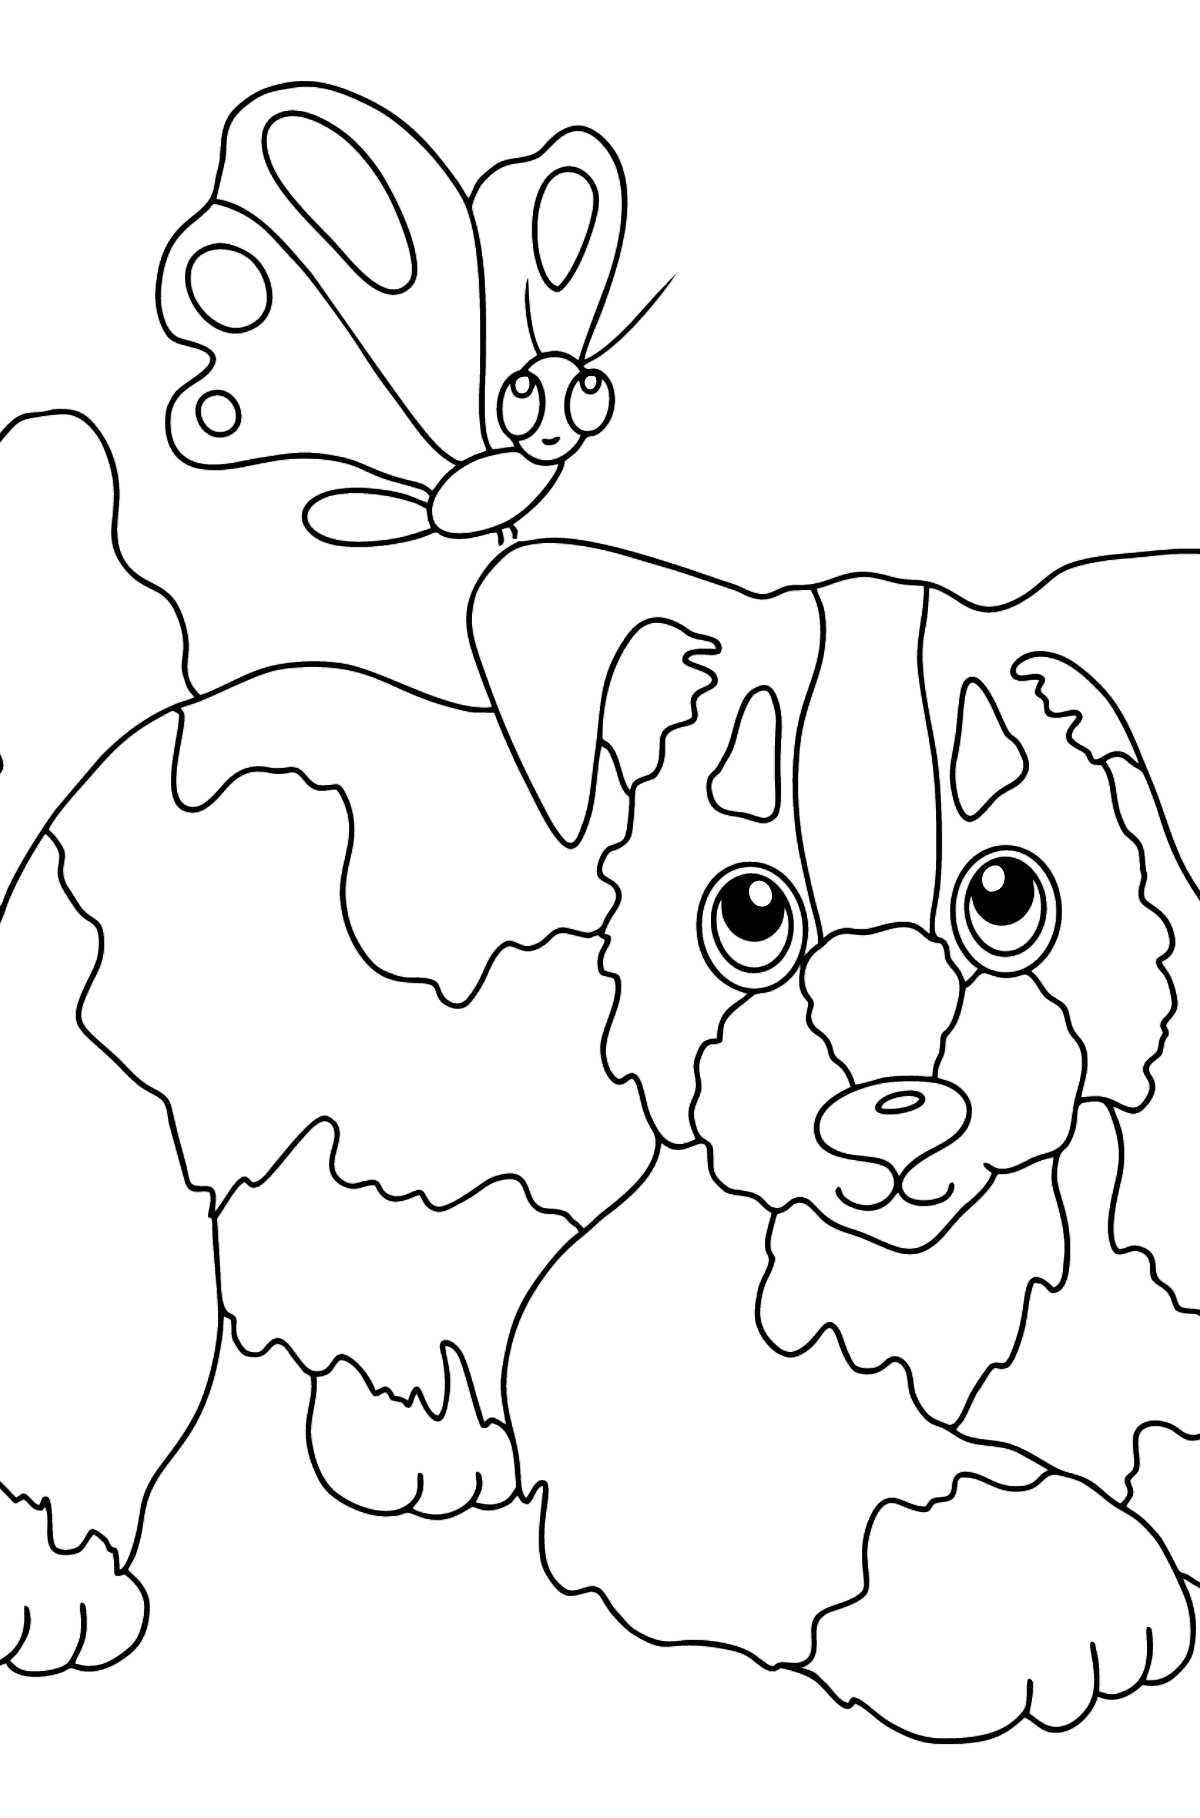 Раскраска задорный Пес - Картинки для Детей